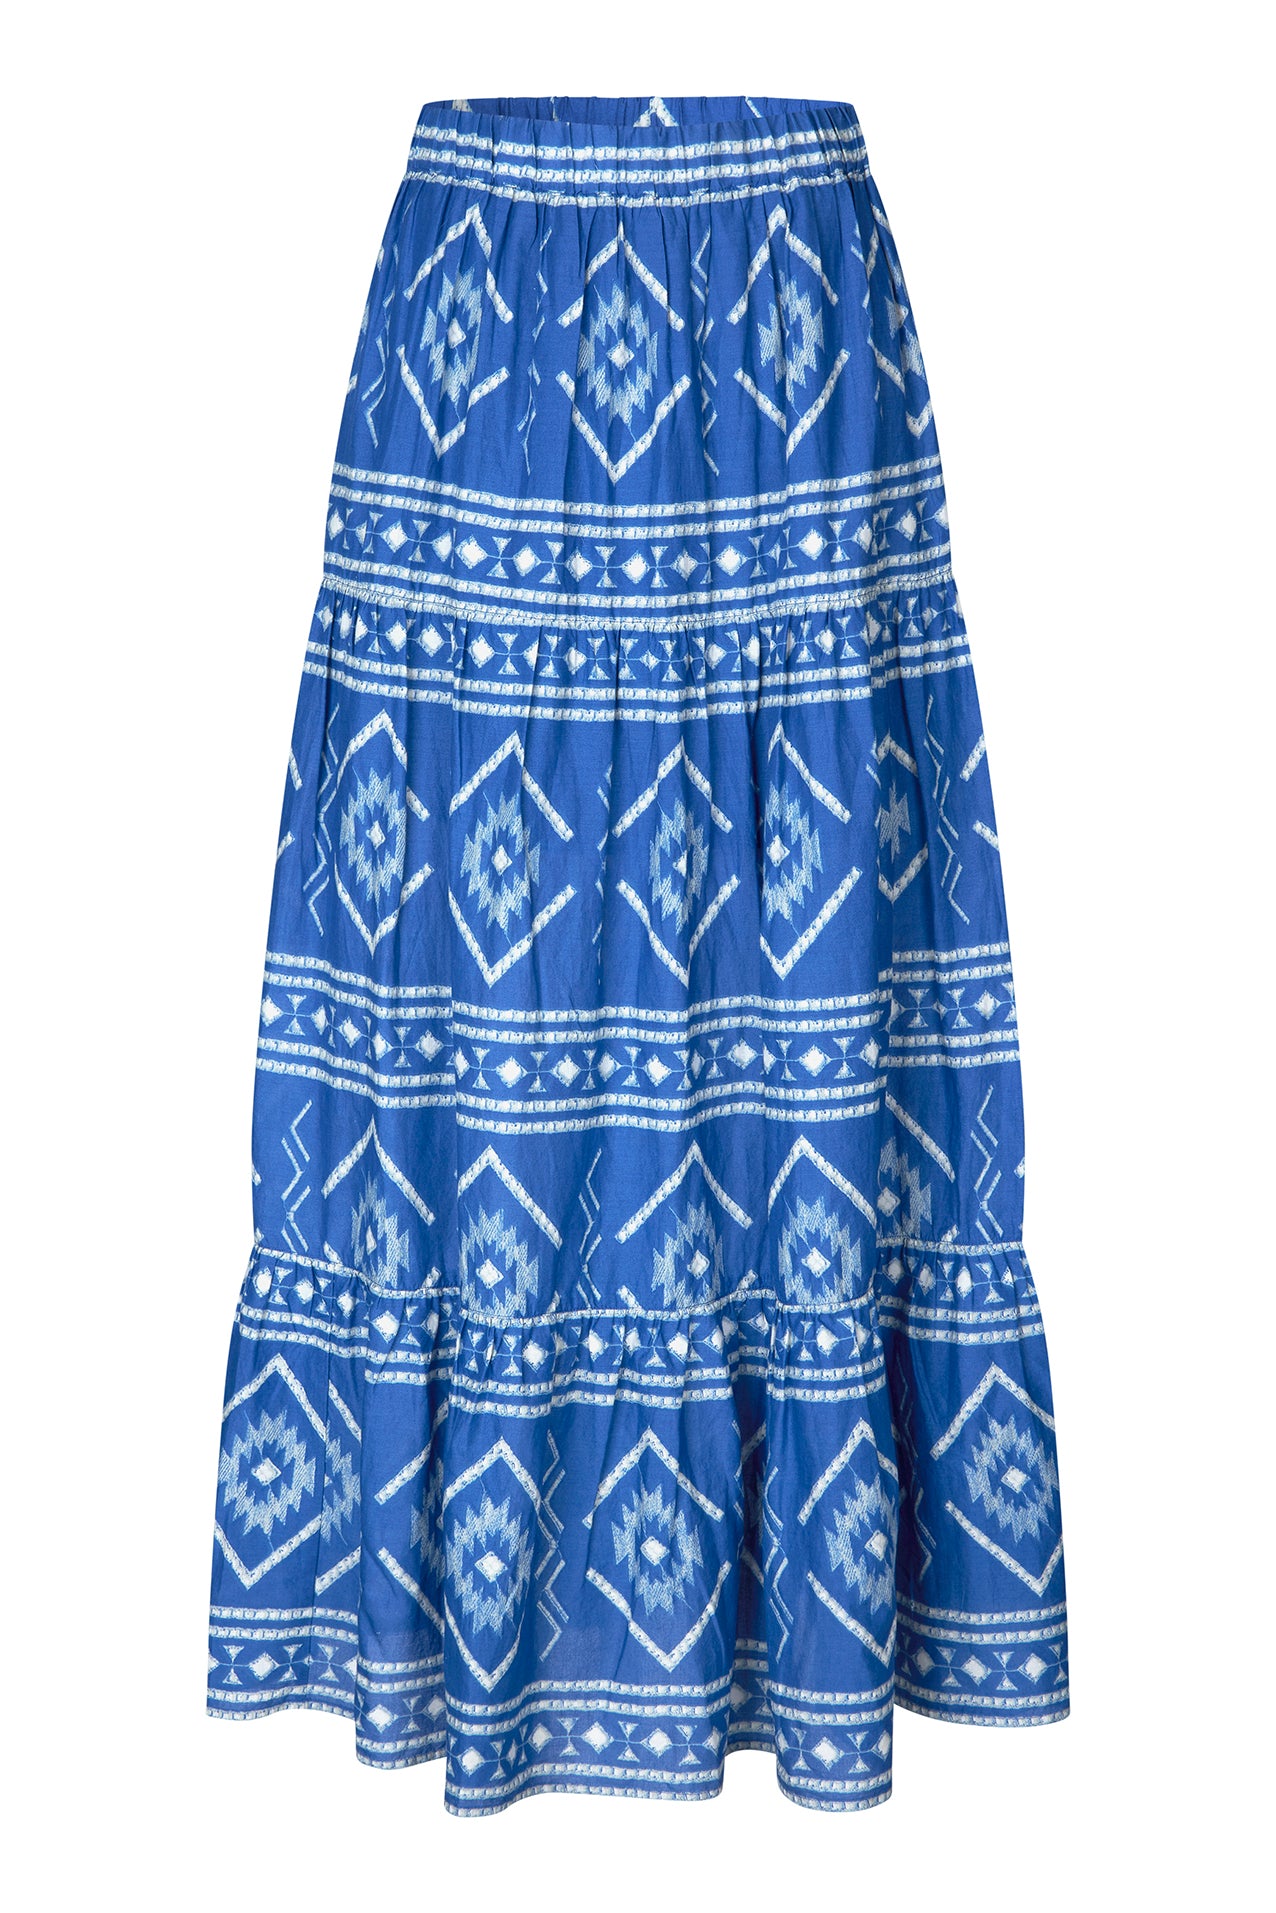 Lollys Laundry SunsetLL Maxi Skirt Skirt 20 Blue